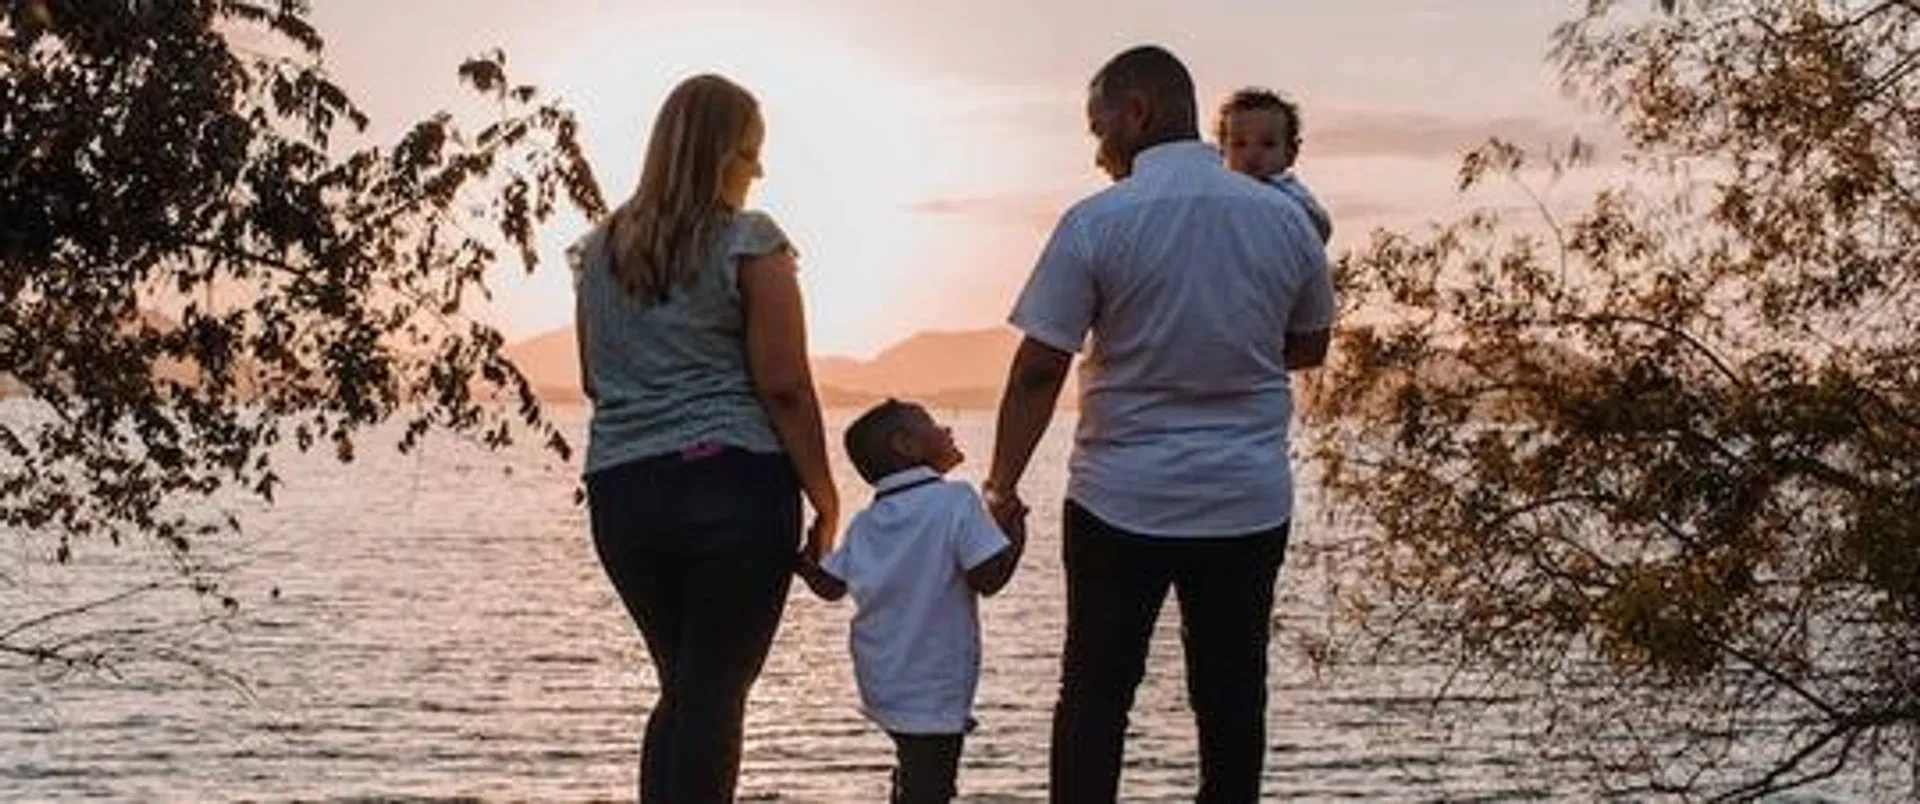 familj med tryggt billån besöker sjö vid solnedgång